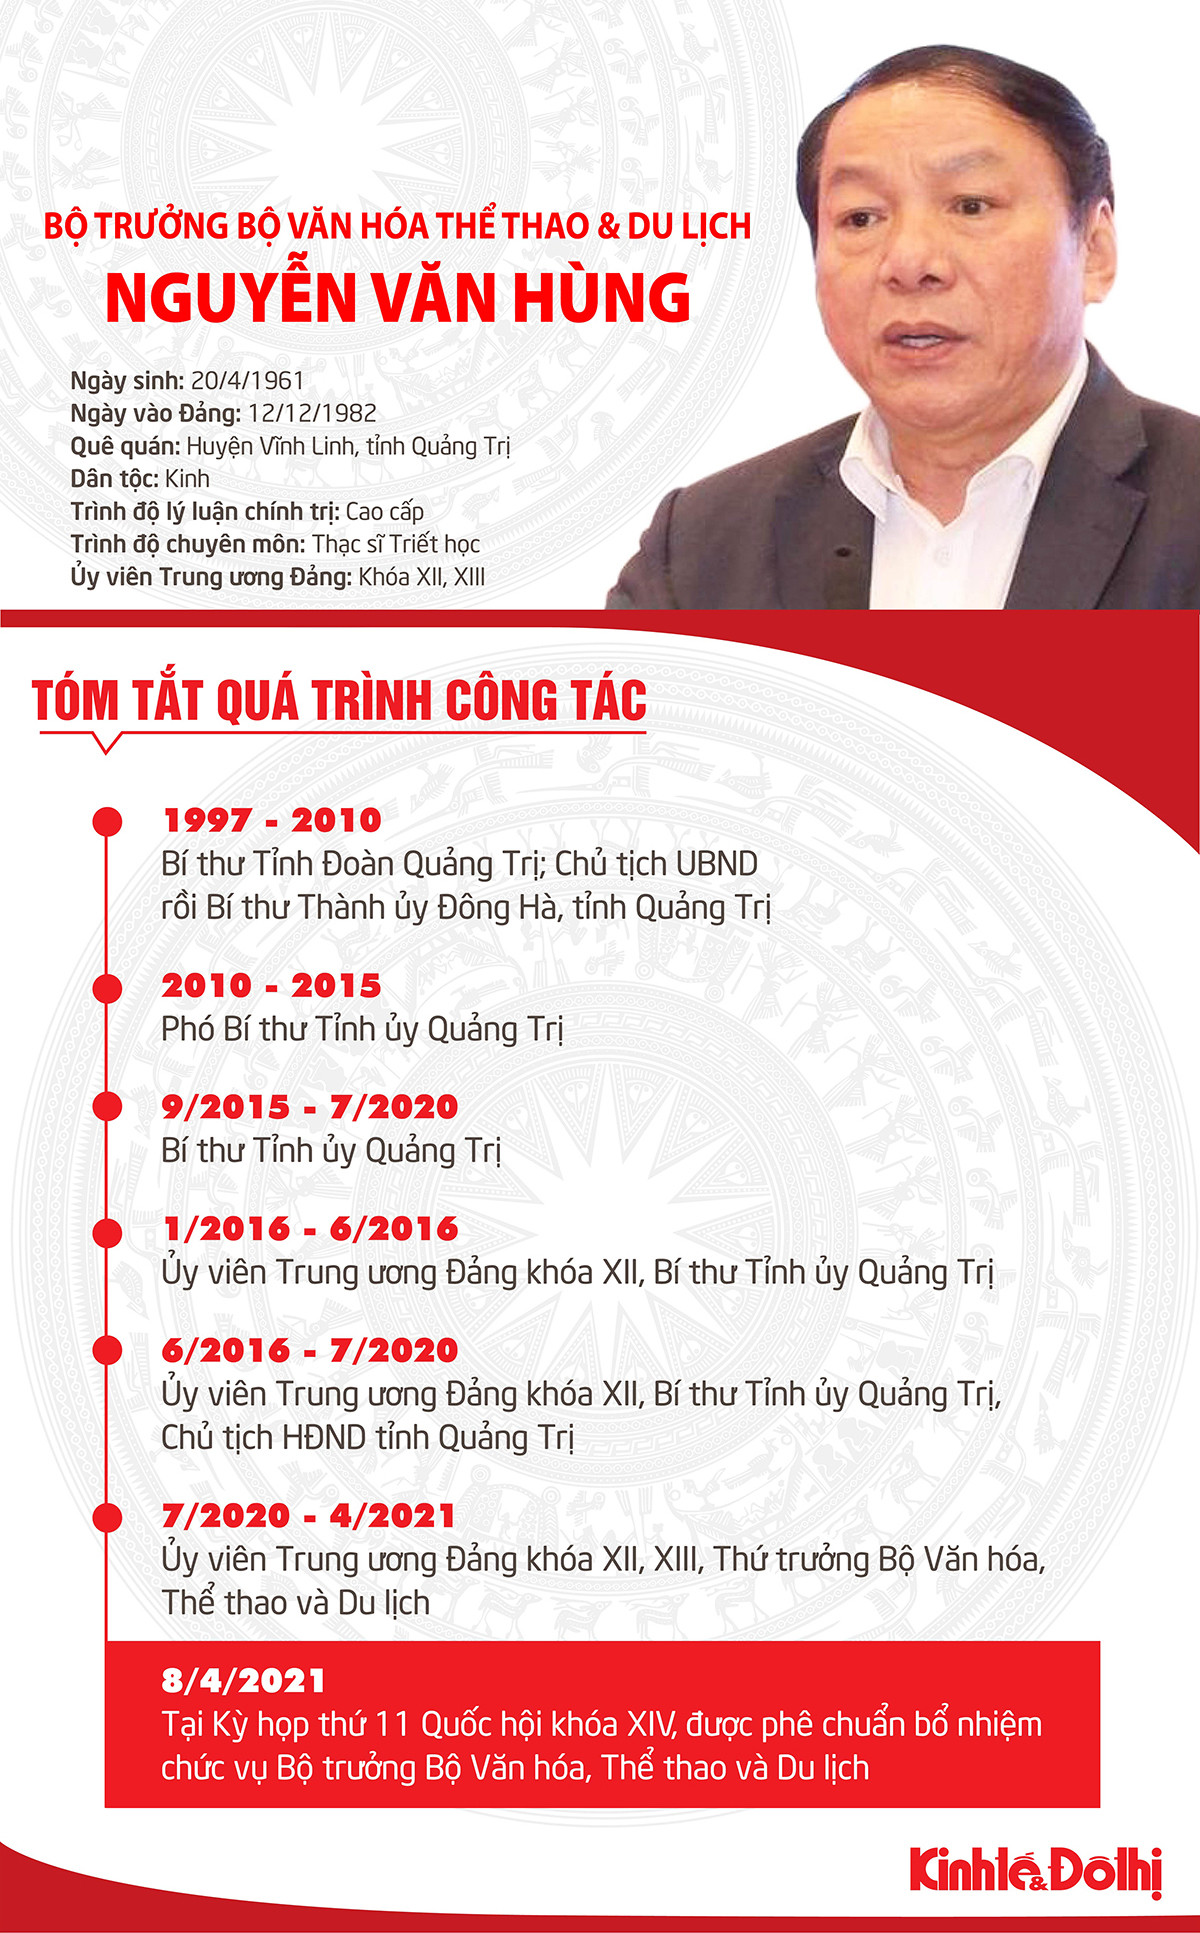 (Infographic) Tóm tắt quá trình công tác của Bộ trưởng Bộ Văn hóa, Thể thao và Du lịch Nguyễn Văn Hùng